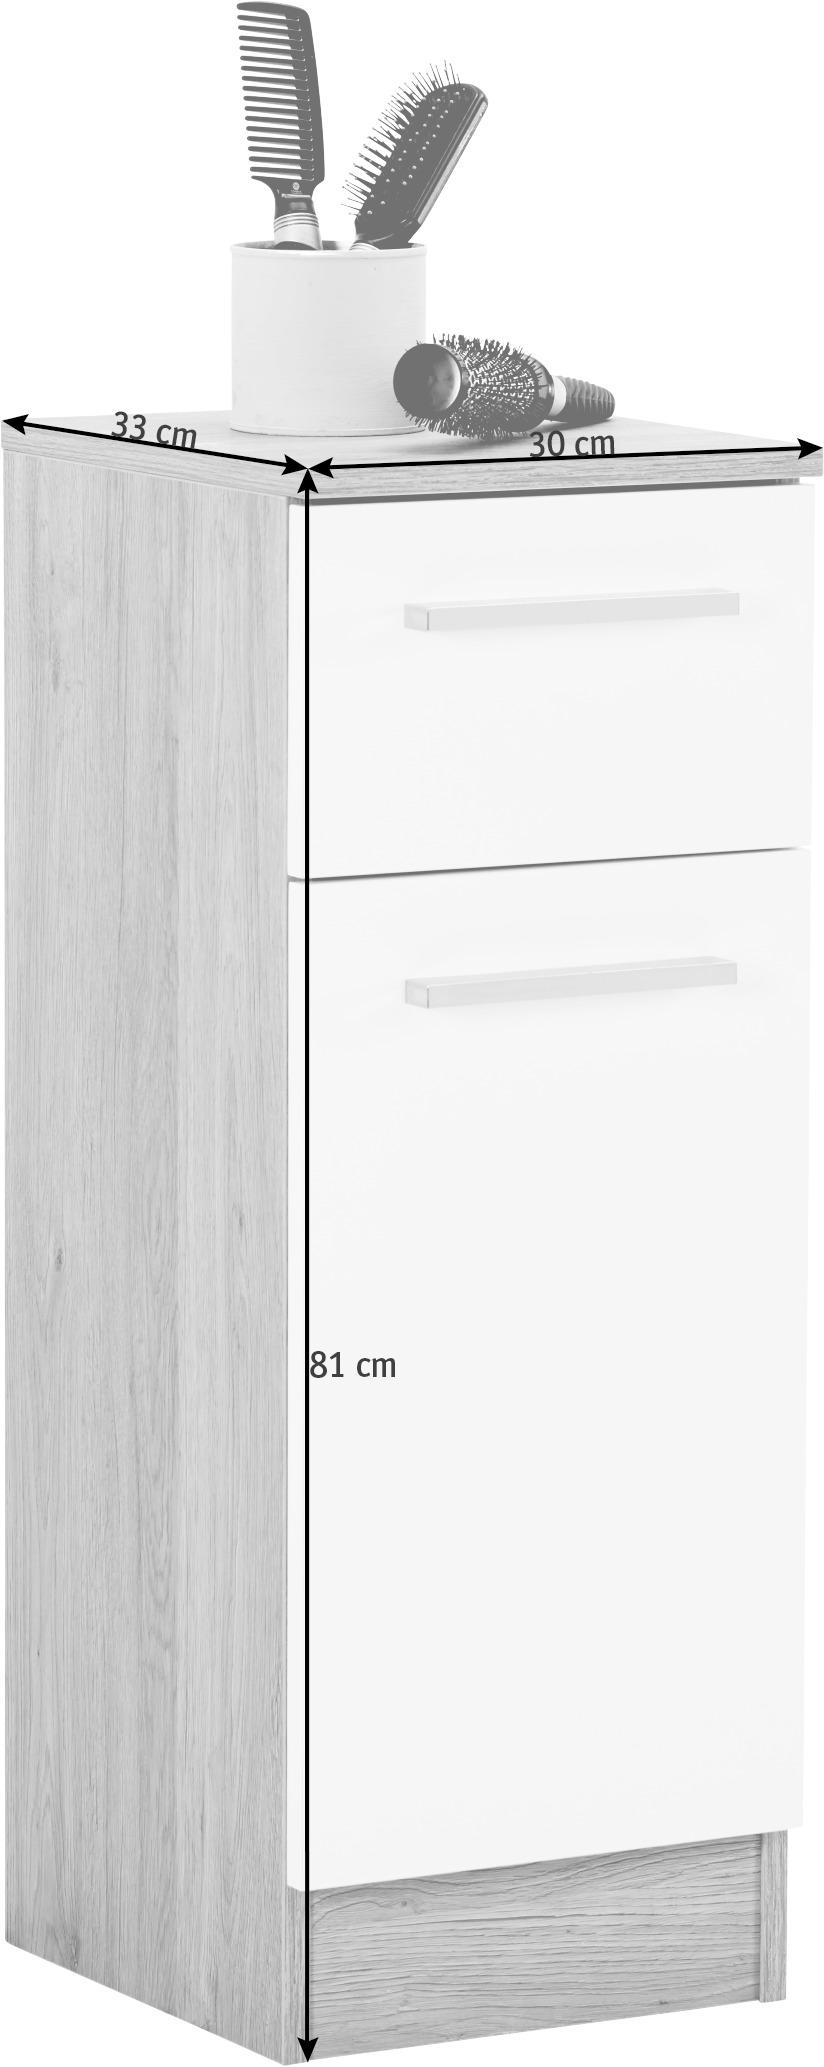 DULAP INFERIOR 30/81/33 cm  - alb/culoare crom, Design, metal/material pe bază de lemn (30/81/33cm) - Xora